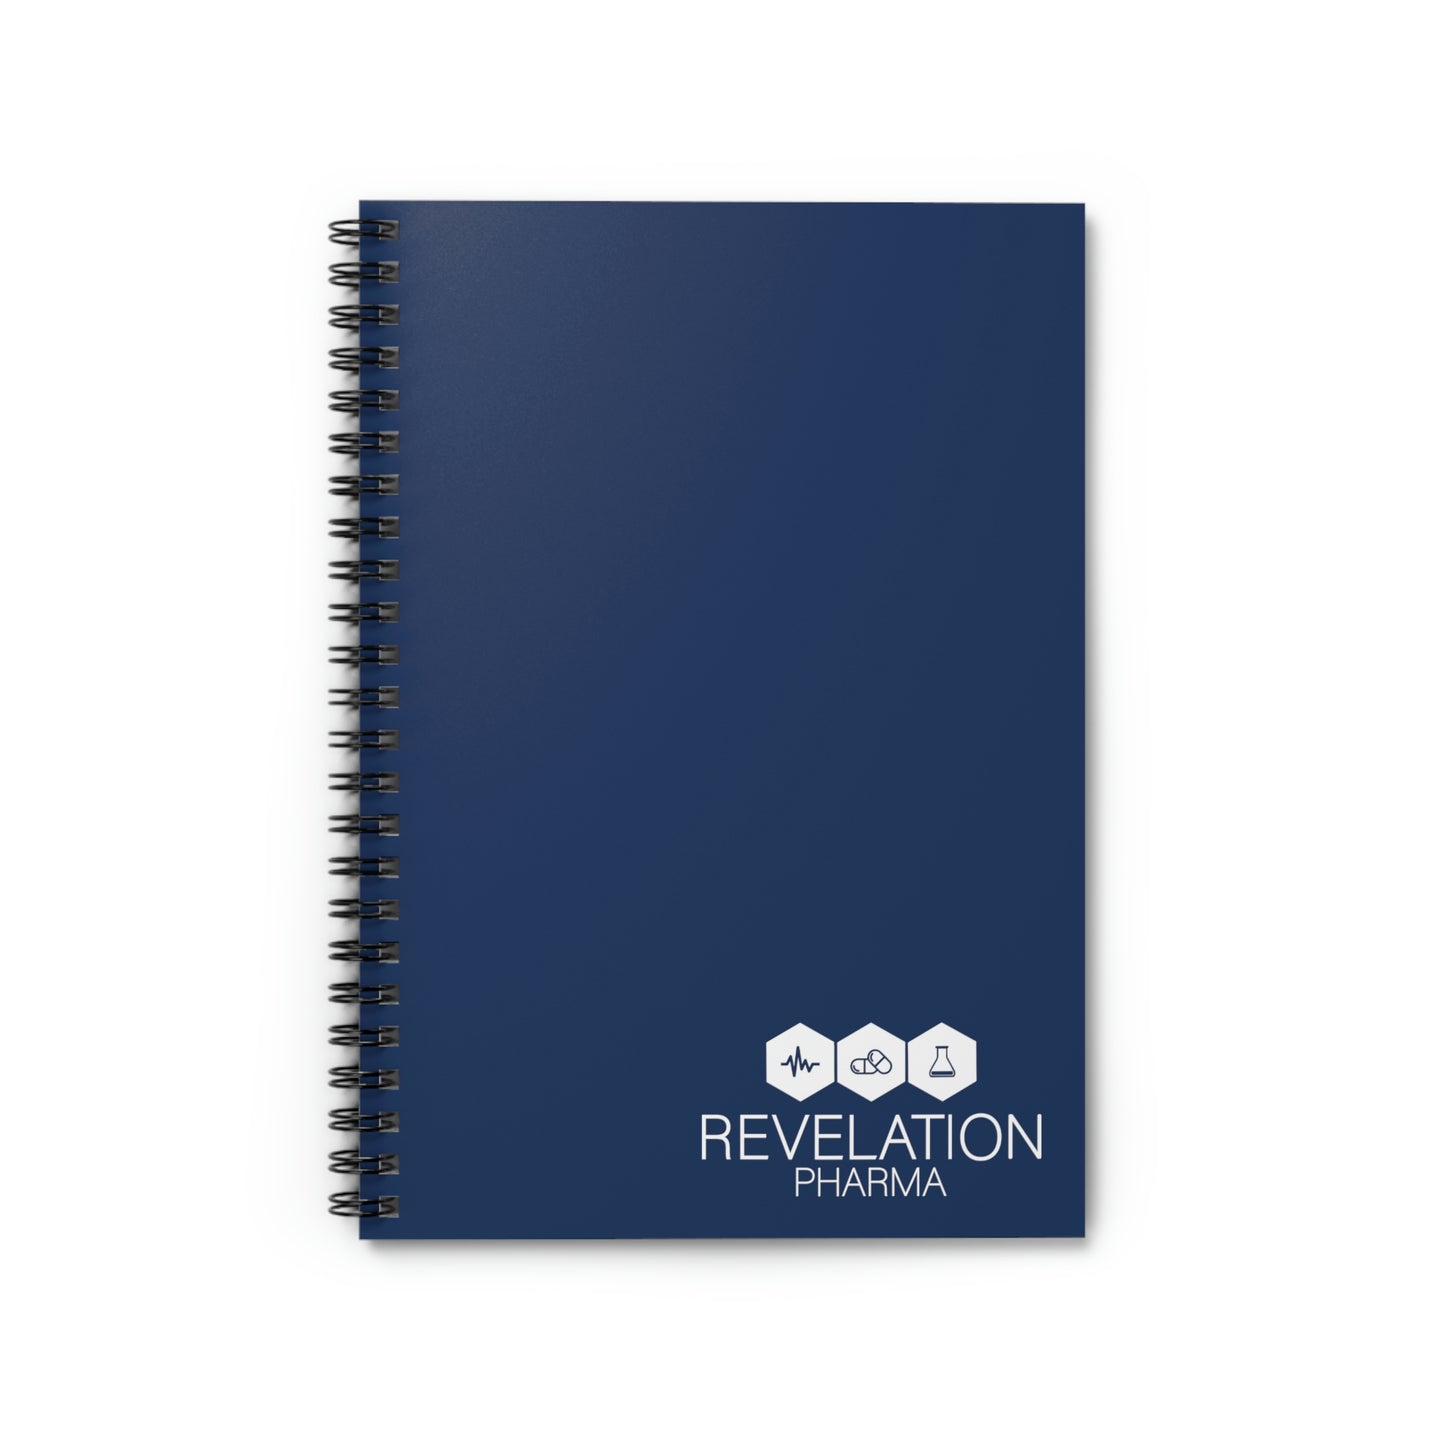 Spiral Notebook - Ruled Line - Revelation Pharma